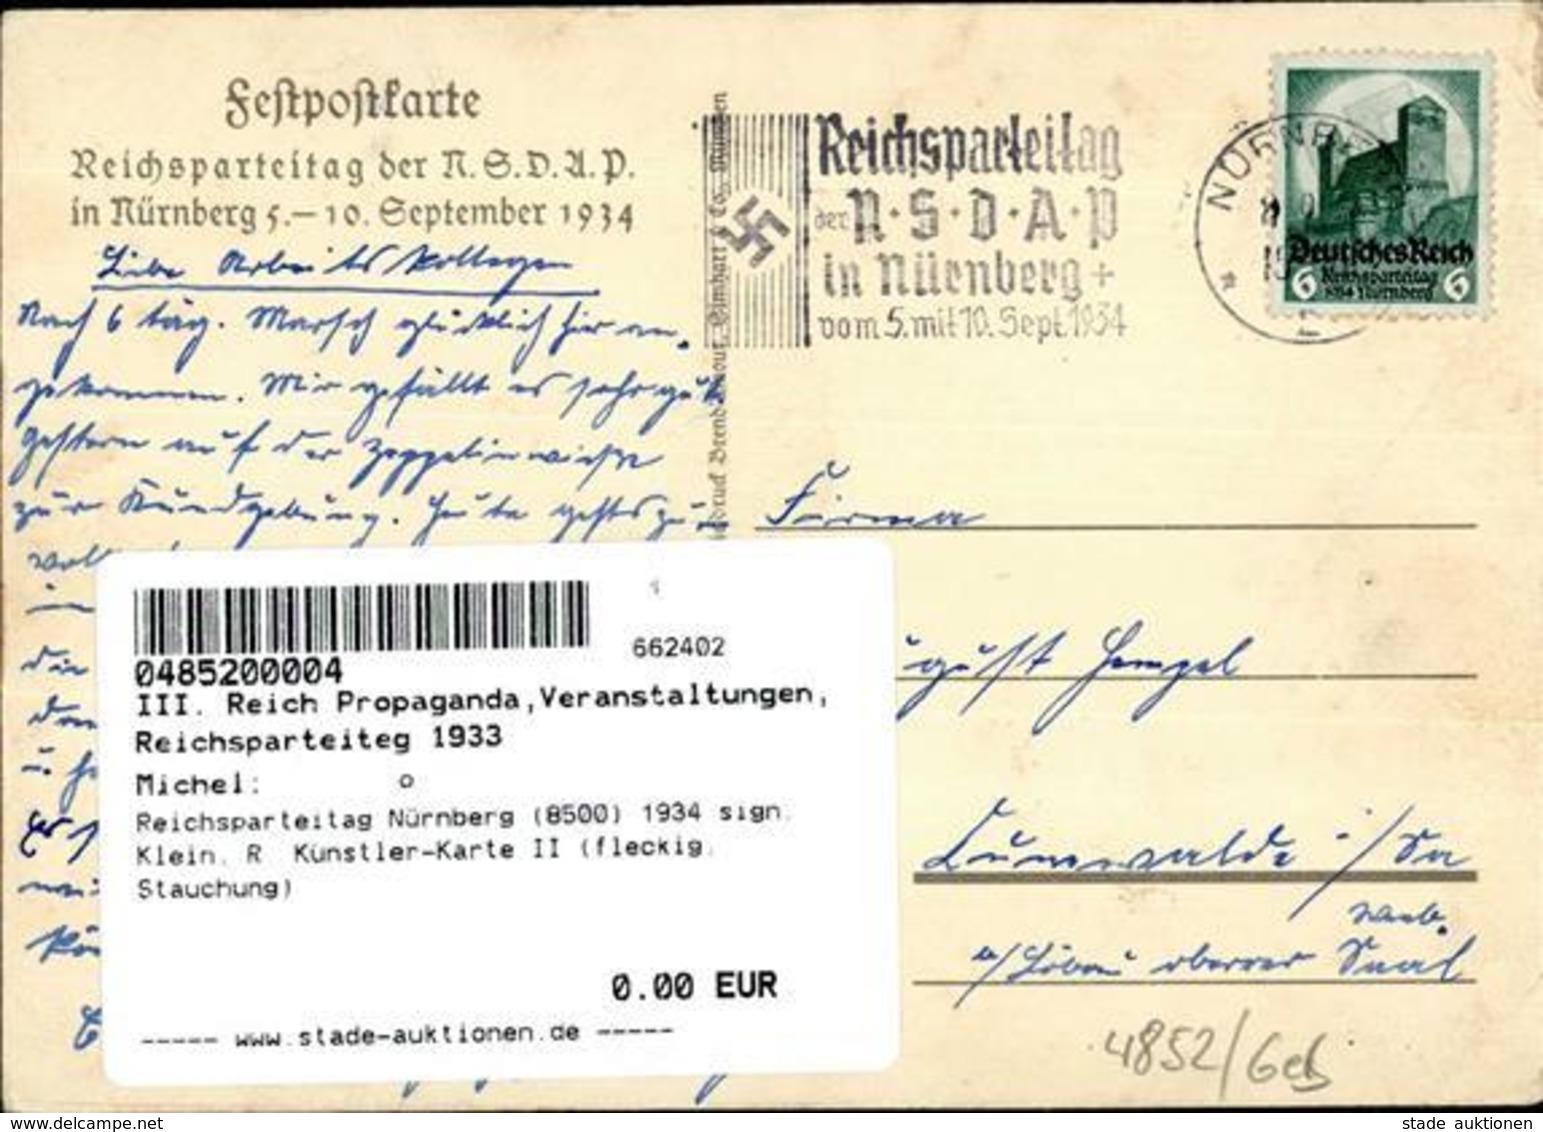 Reichsparteitag Nürnberg (8500) 1934 Sign. Klein, R. Künstler-Karte II (fleckig, Stauchung) - War 1939-45